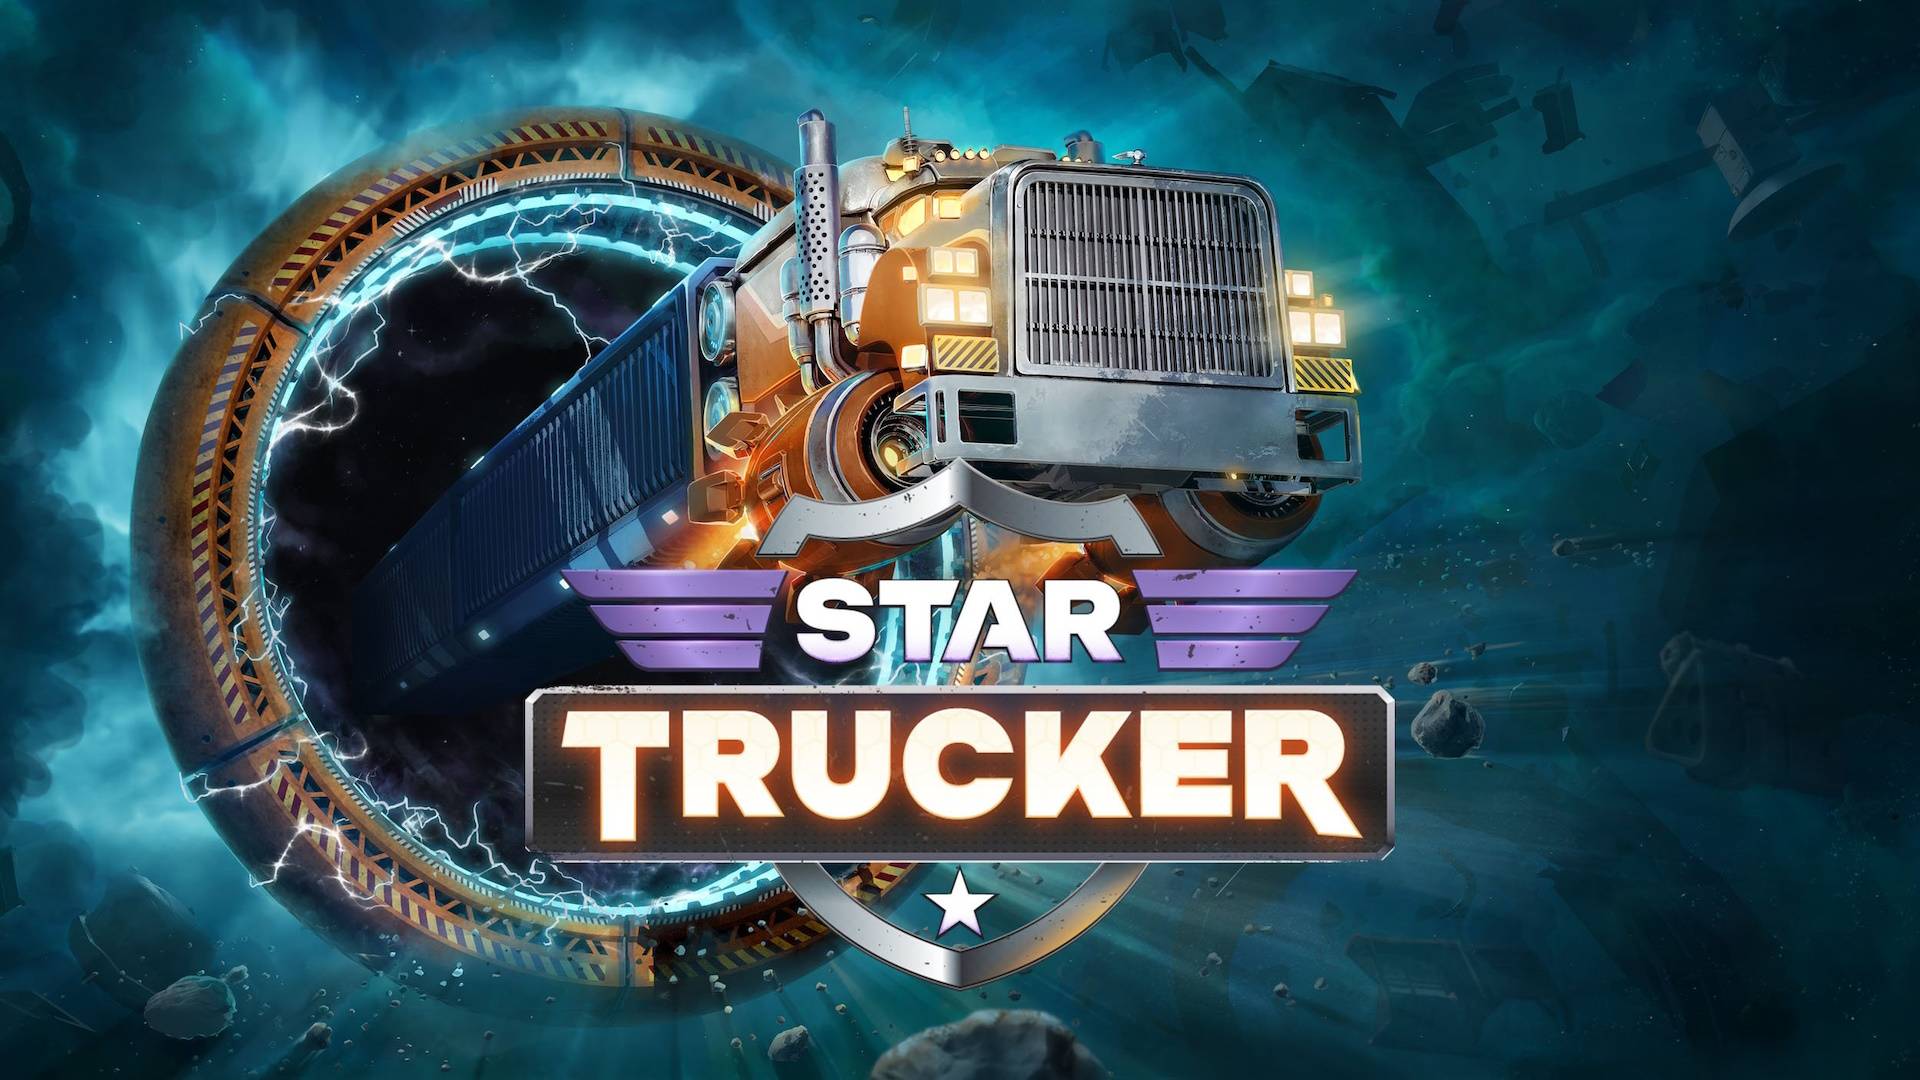 Star Trucker demo ? закончить демку и сделать выводы, так что же с игрой не так?